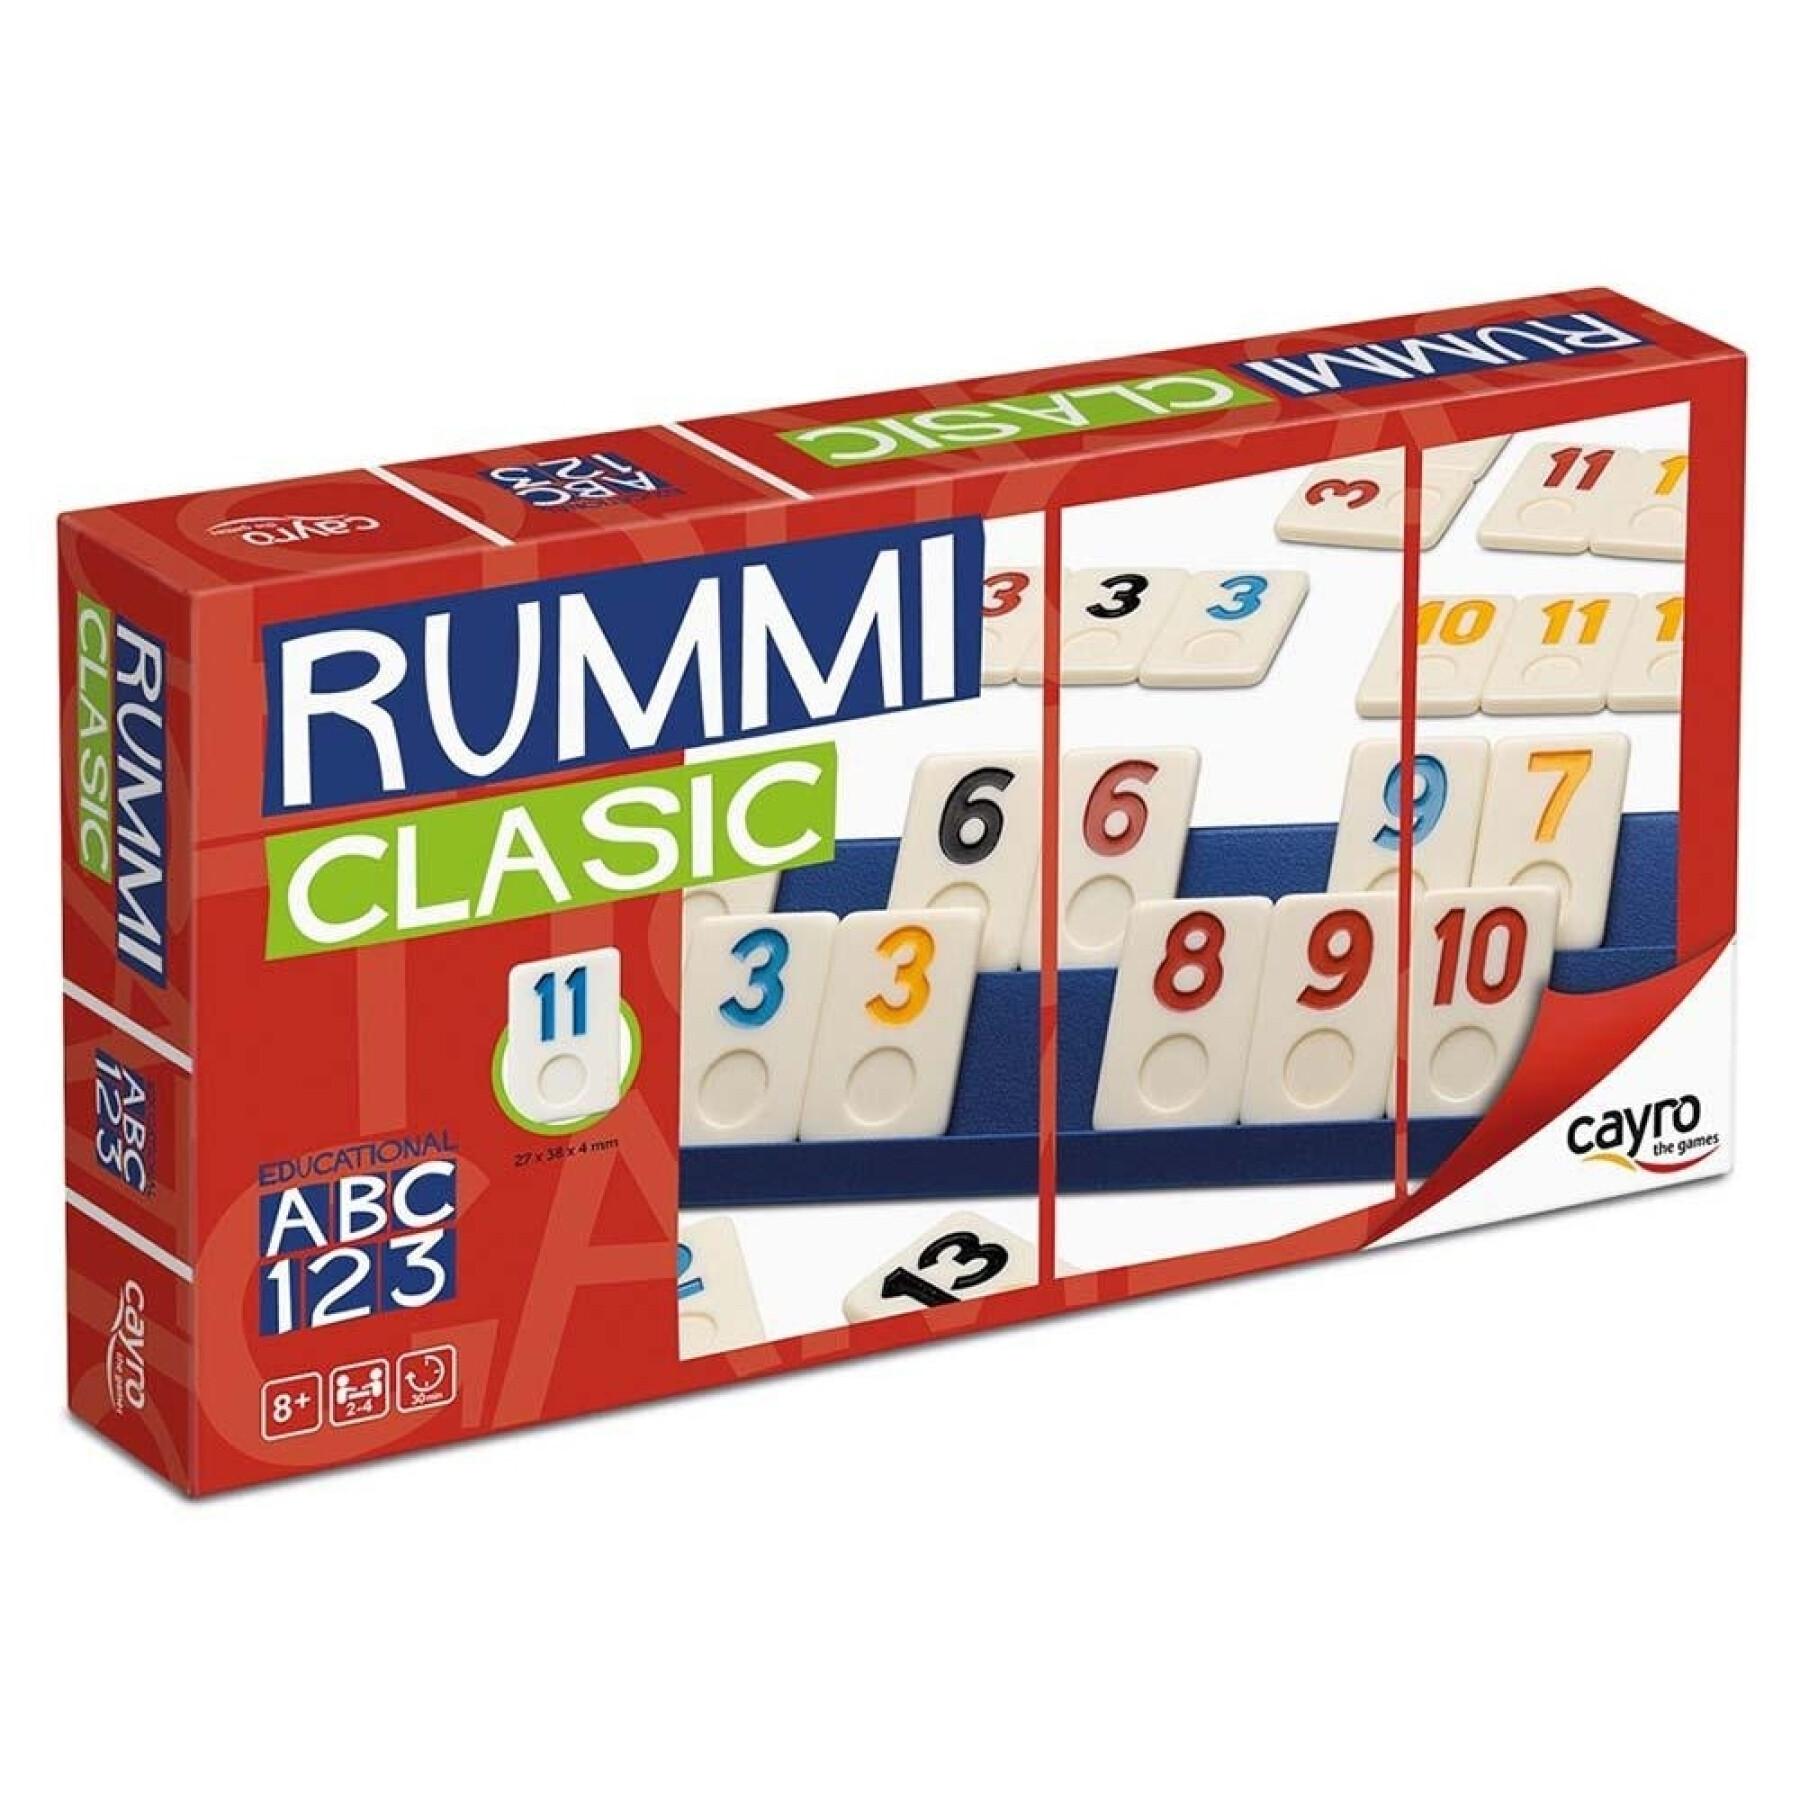 Jeux de société rummi classique Cayro